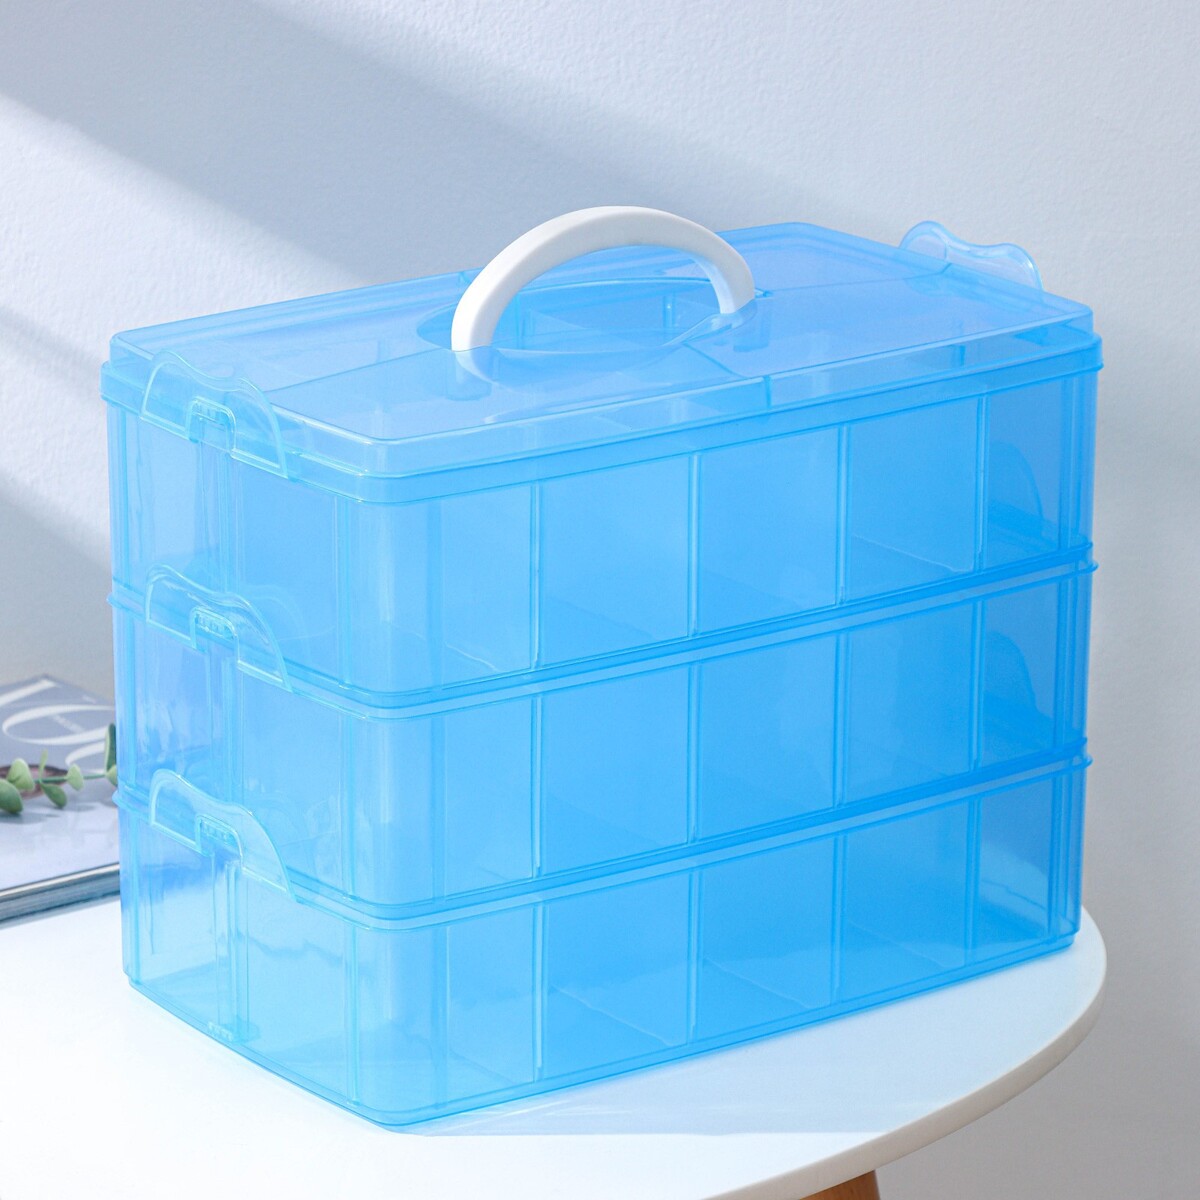 Органайзер для хранения пластиковый, 3 яруса, 30 отделений, 32×18×24 см, цвет голубой органайзер для хранения пластиковый 3 яруса 30 отделений 32×18×24 см голубой